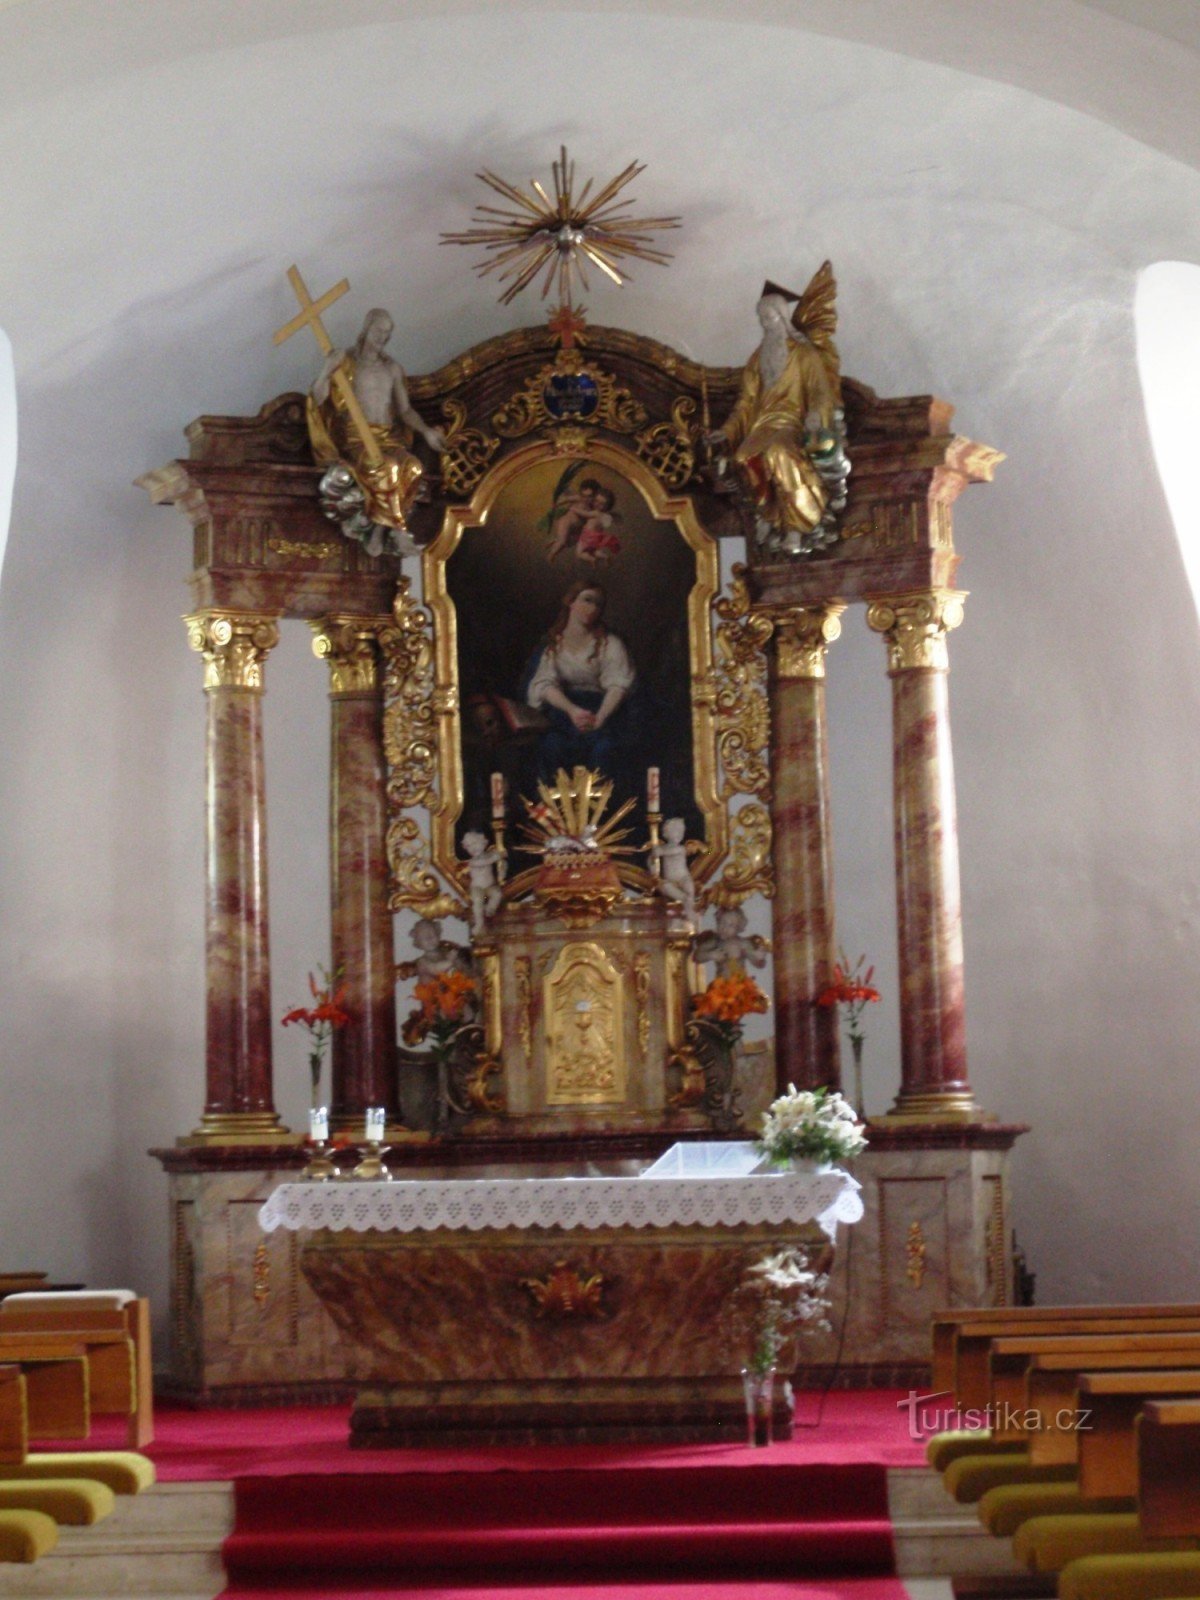 o altar-mor com a imagem de S. Maria Madalena